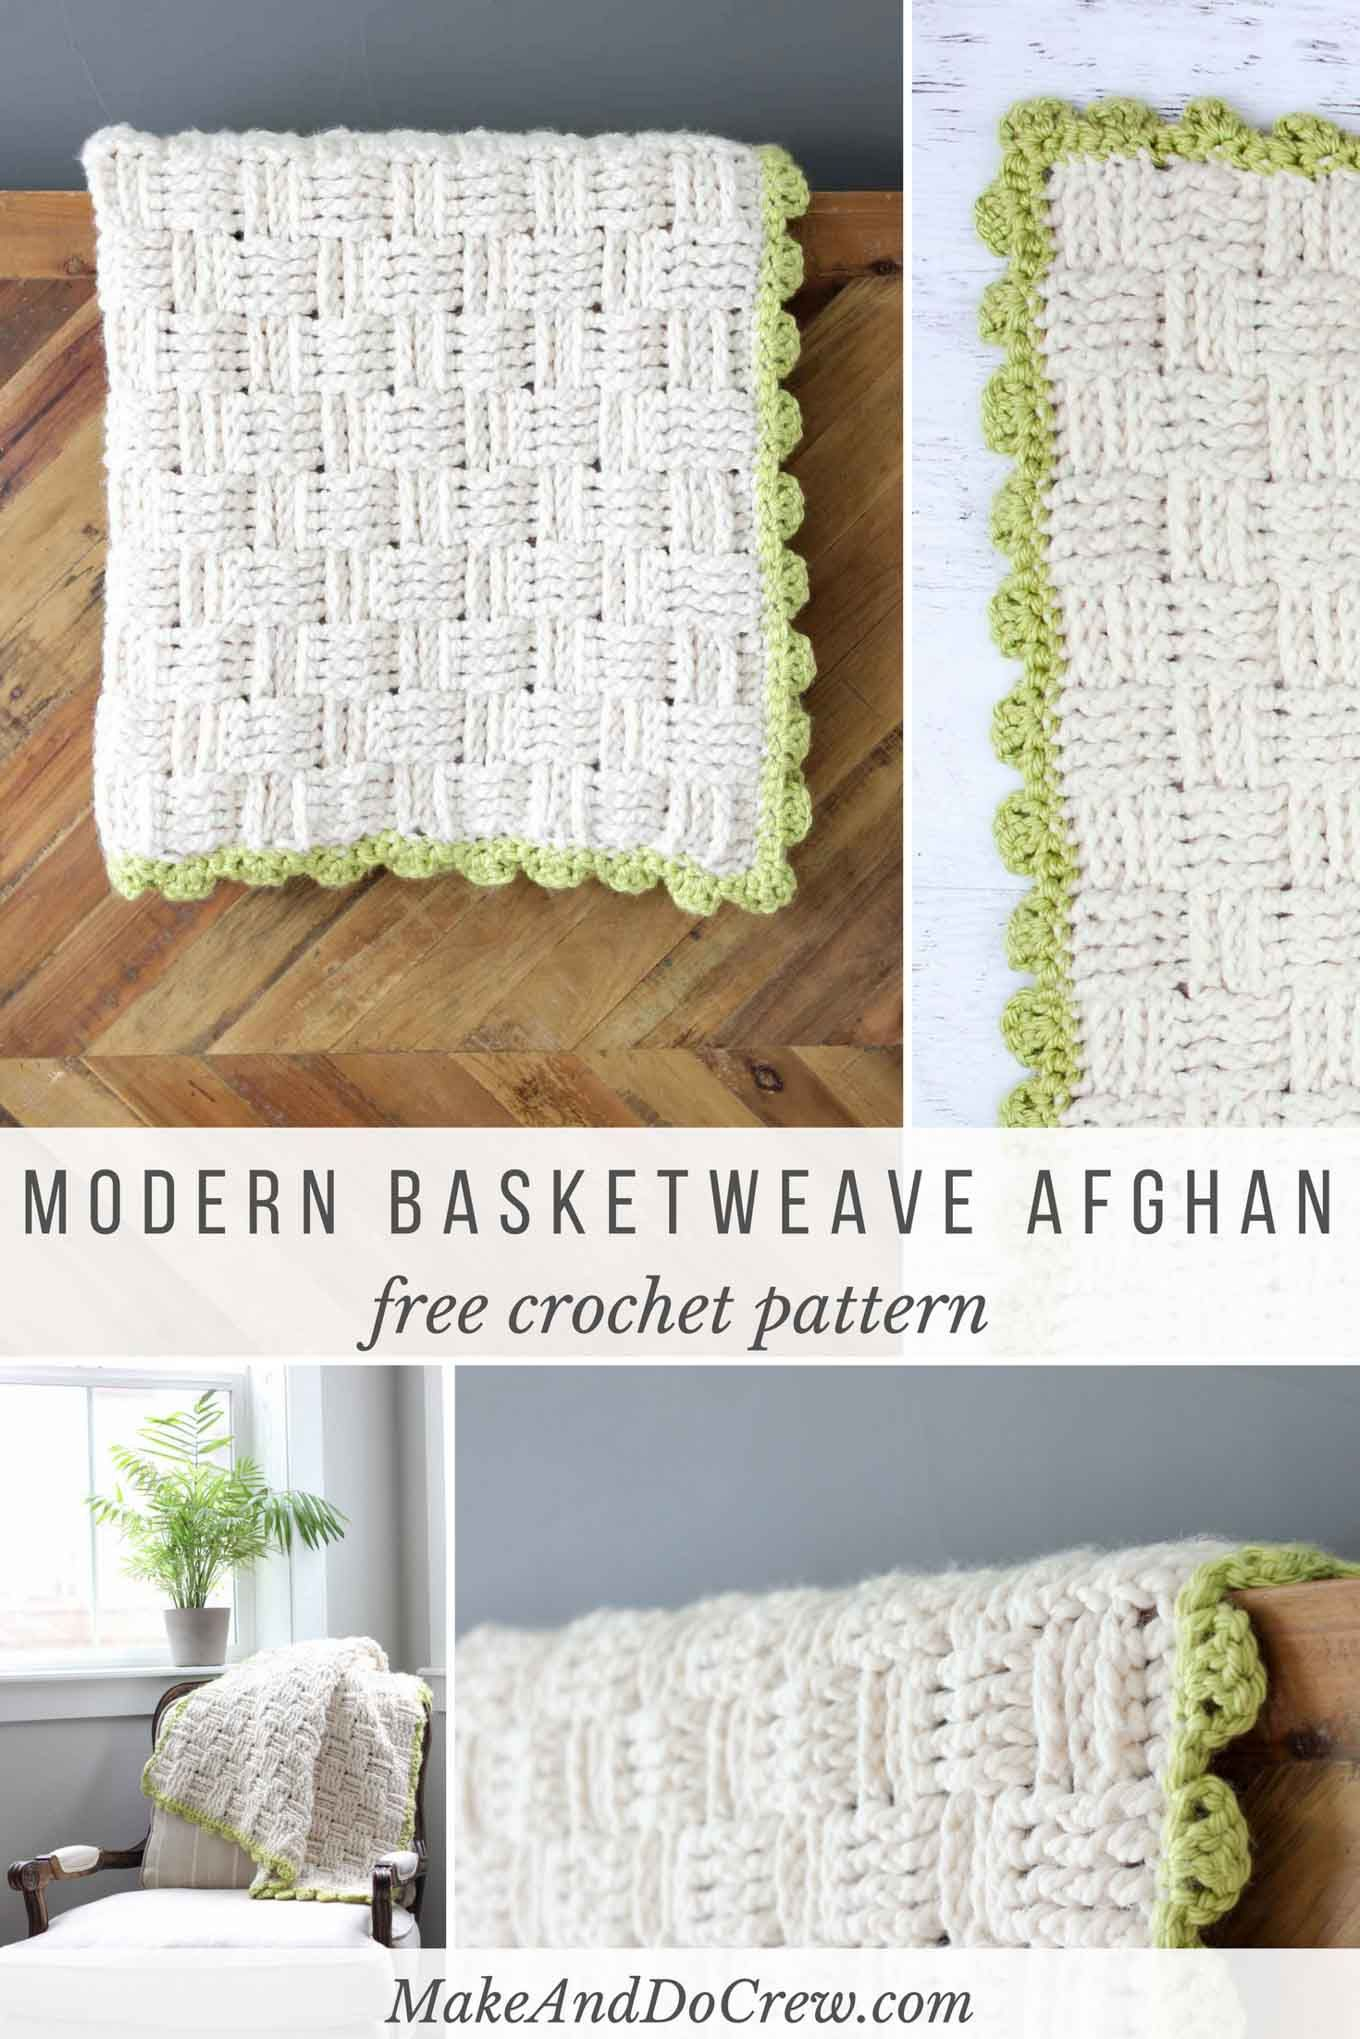 Crochet Weave Blanket Pattern Modern Crochet Basketweave Afghan Free Pattern Crochet Afghan